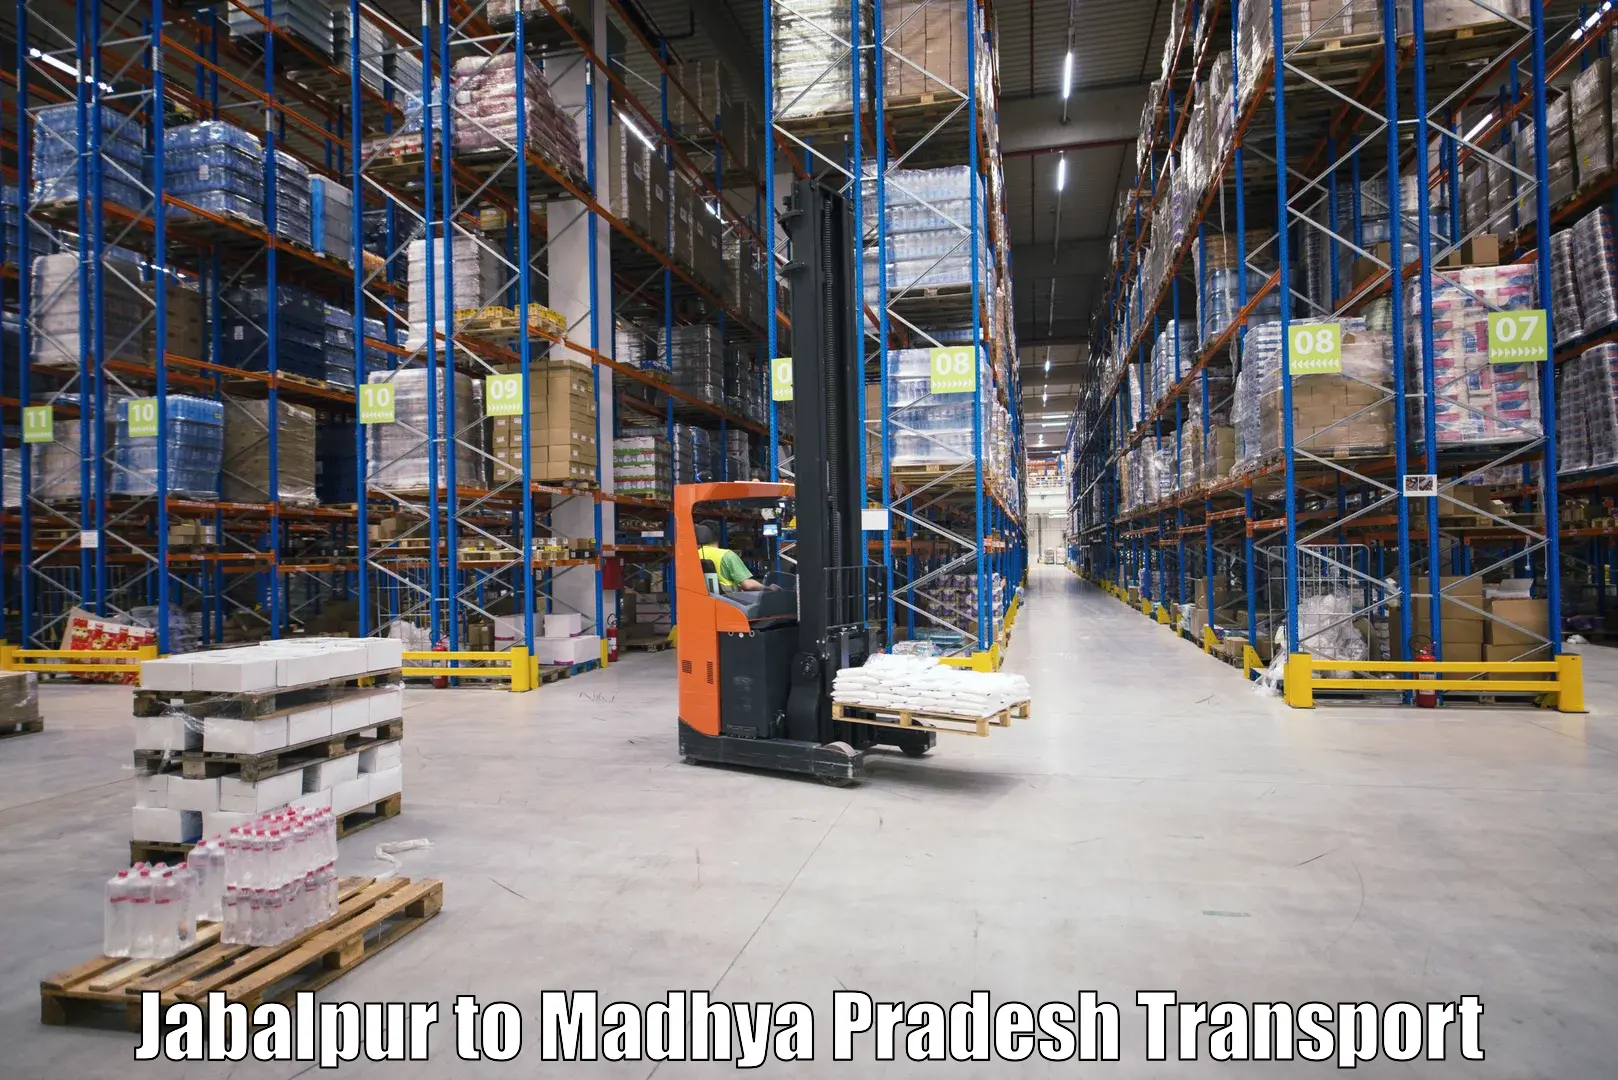 Daily parcel service transport Jabalpur to Semariya